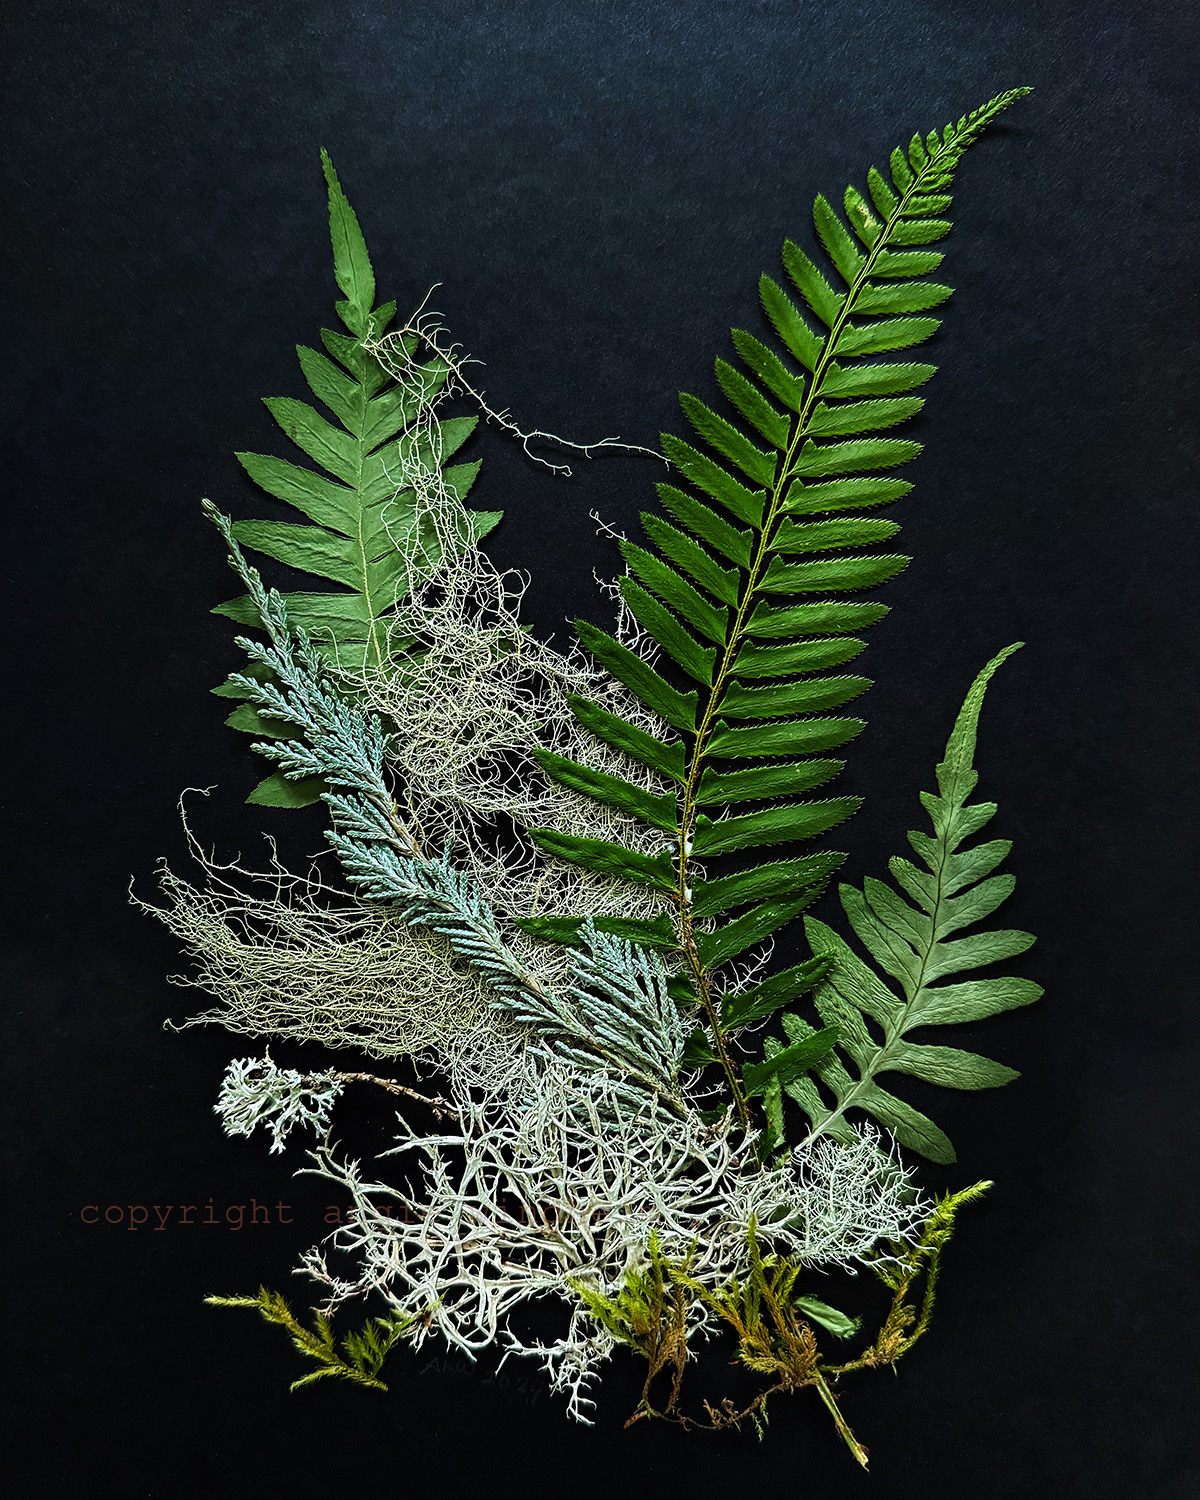 Fern and lichen arrangement on black paper.